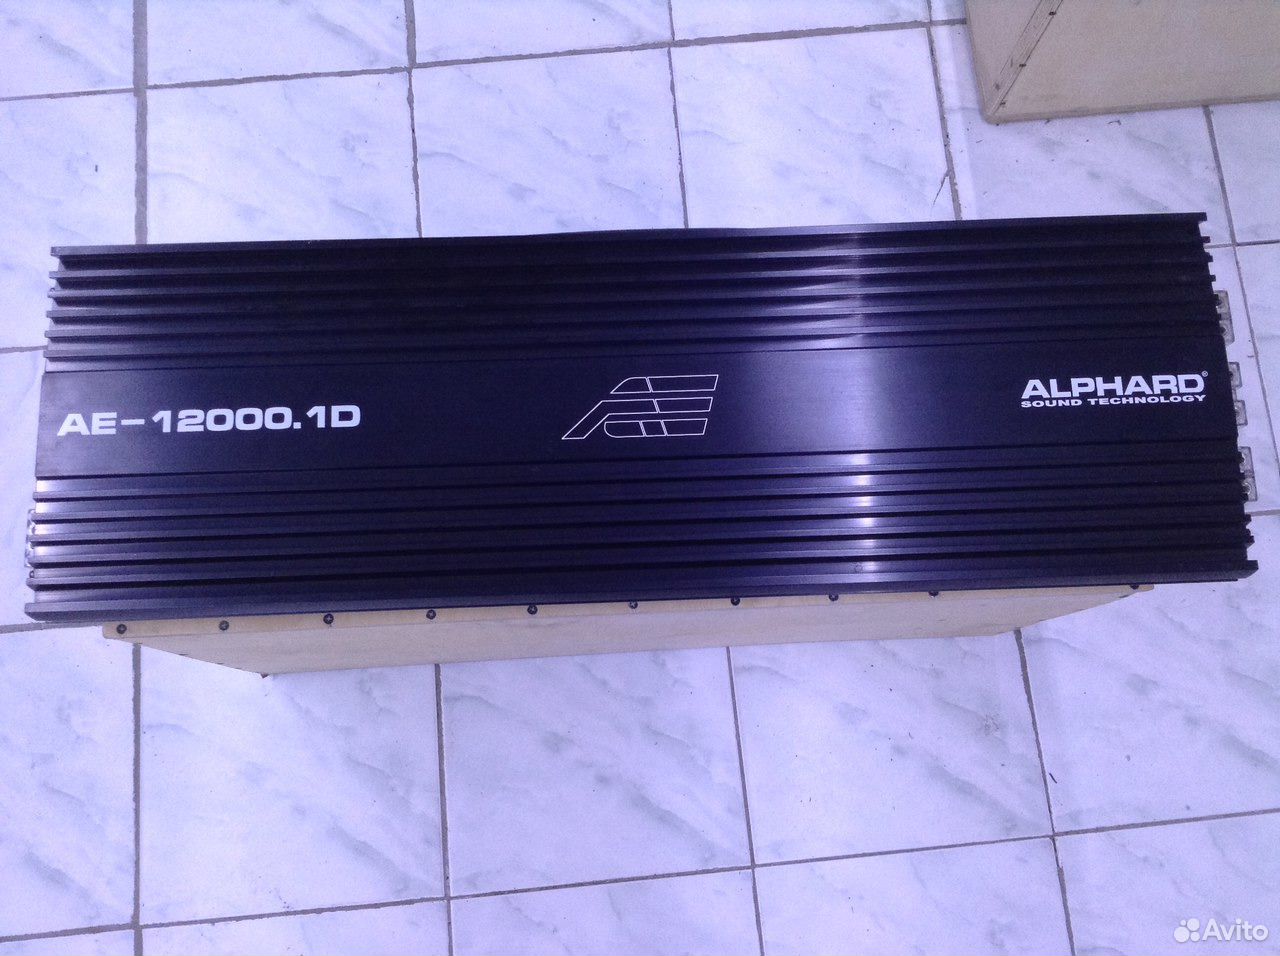 Alphard AE 12000.1D